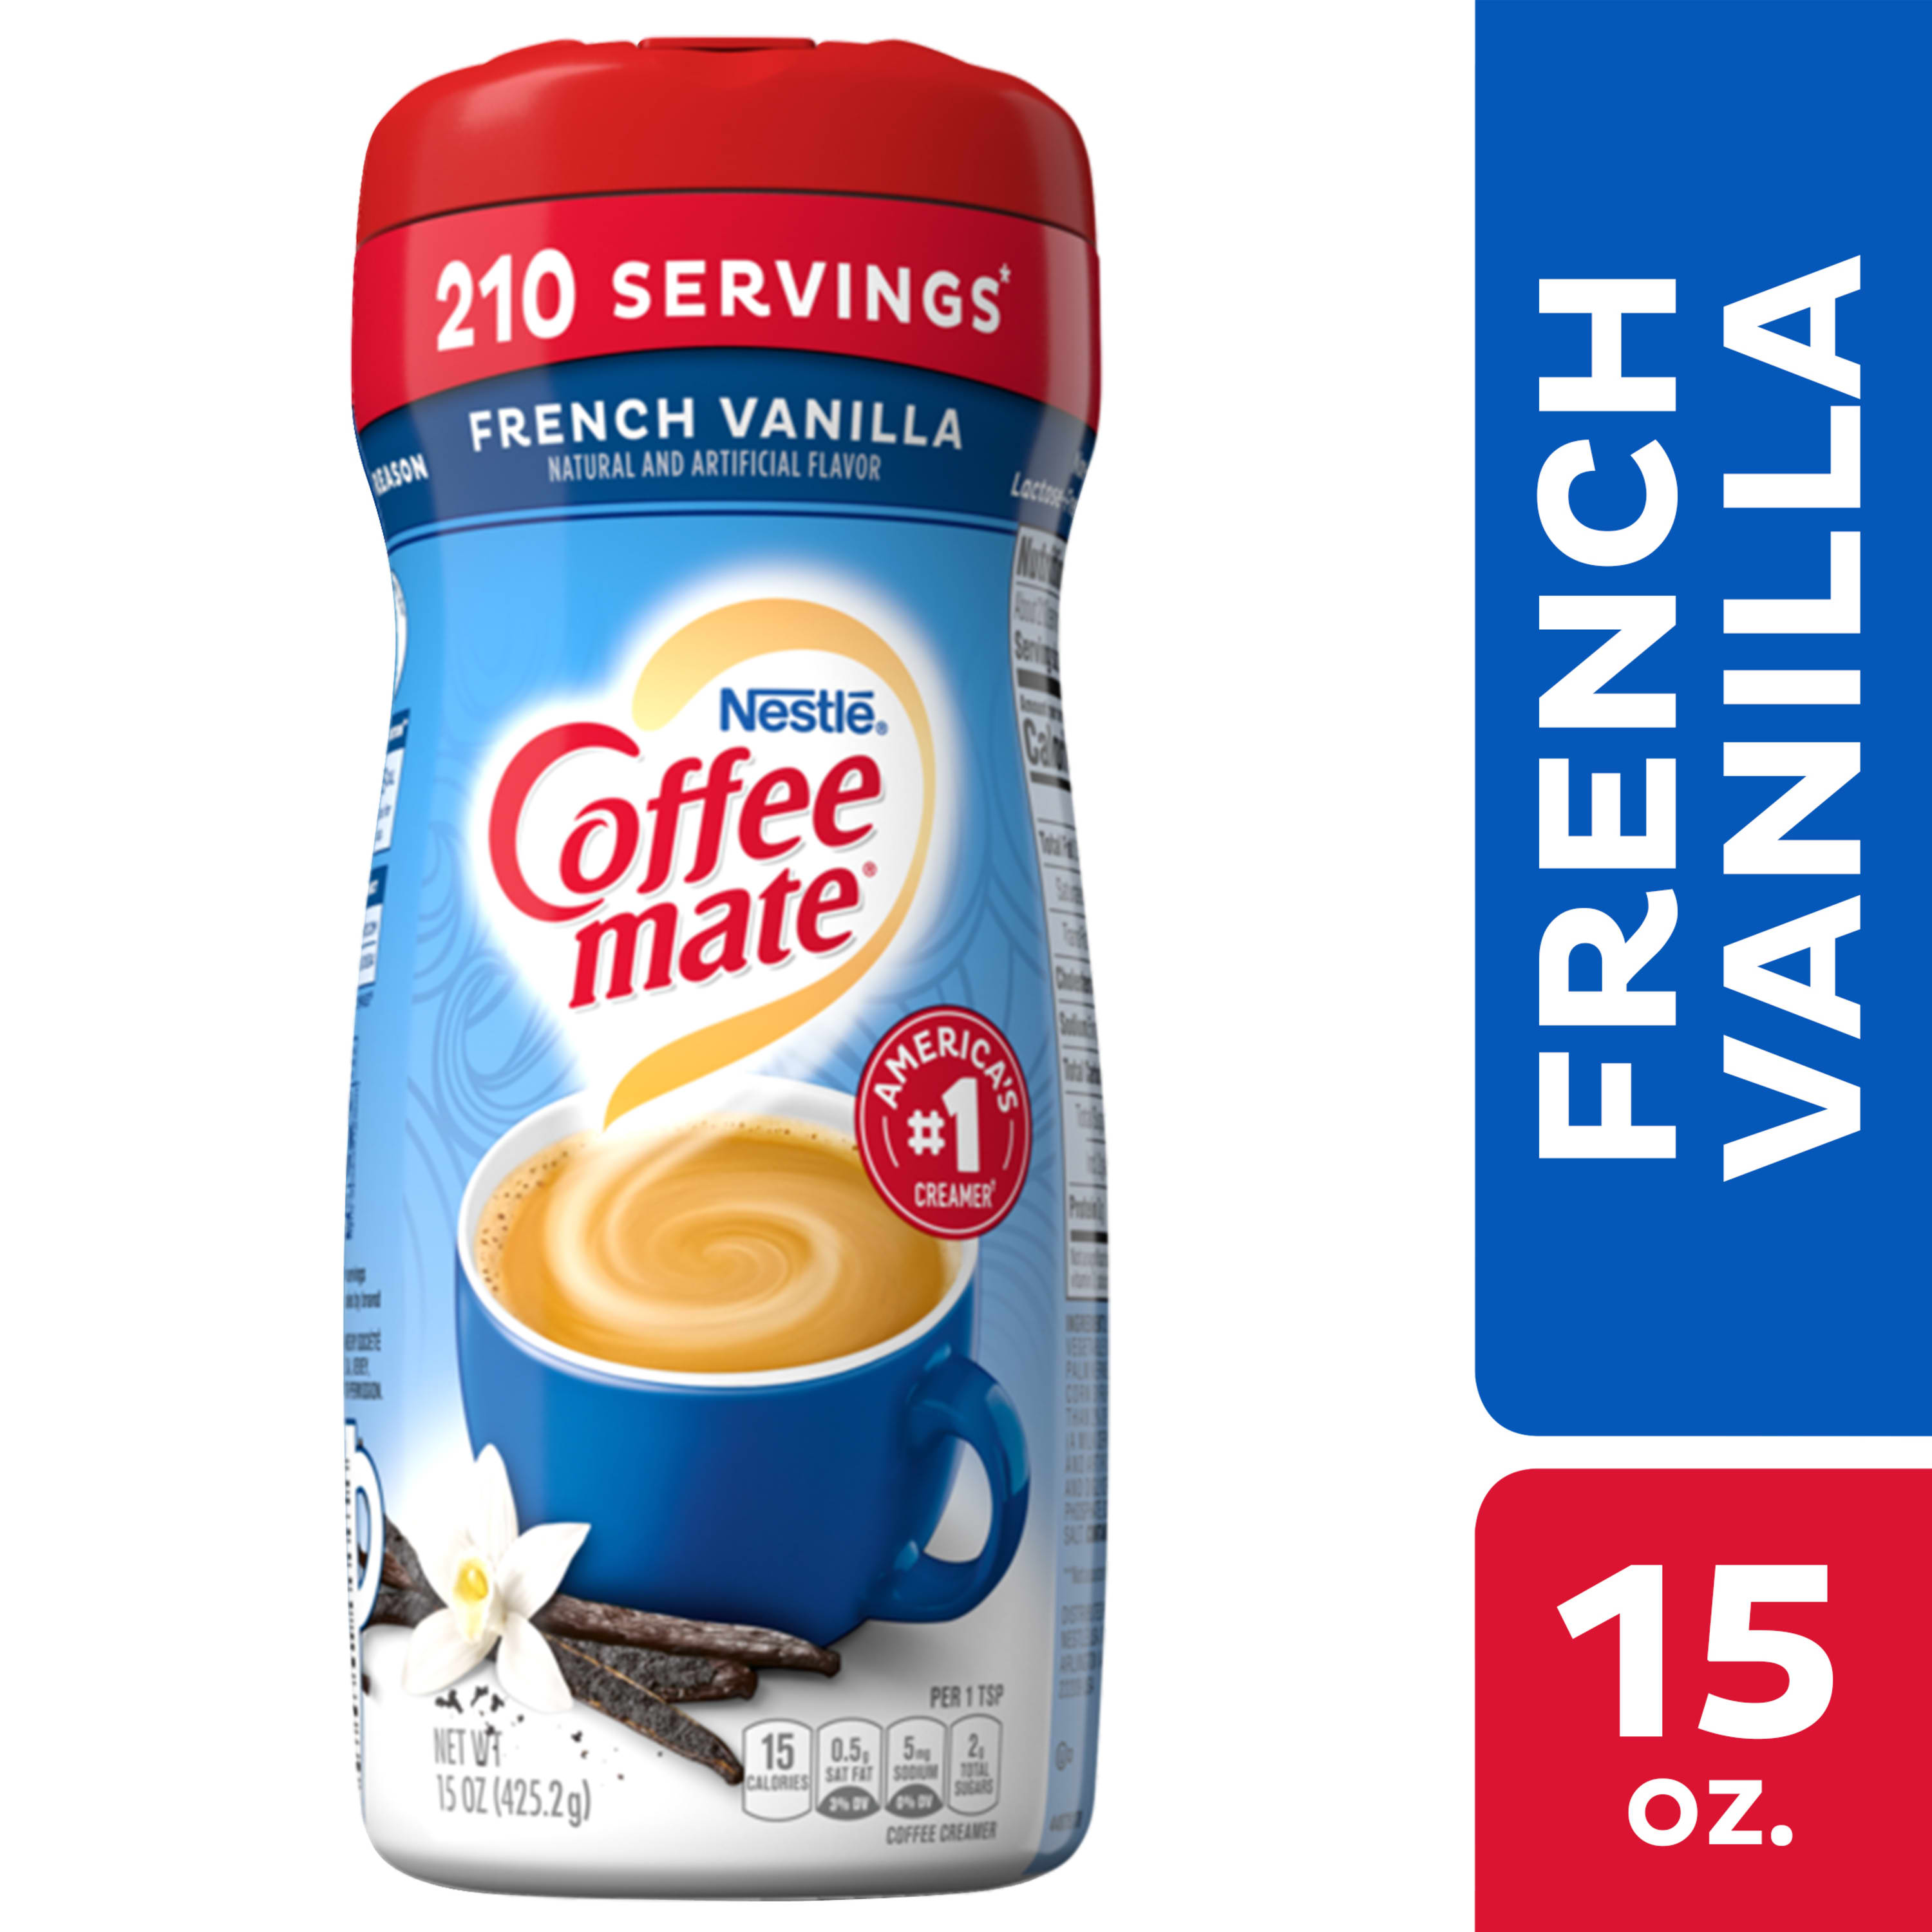 Powder Coffee Creamer, Sugar Free, French Vanilla, 10.2 oz (289.1 g)